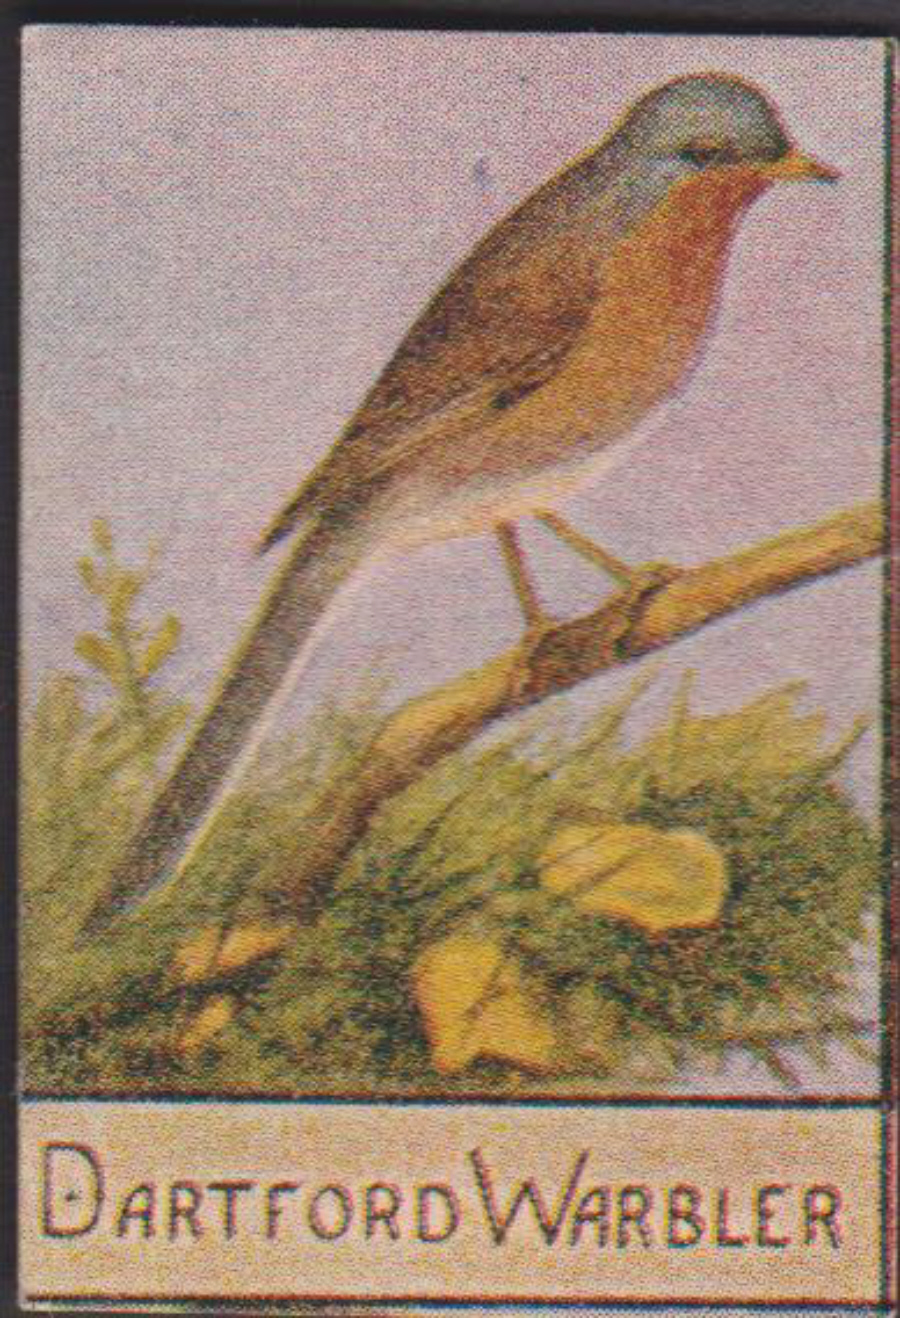 Spratt's British Bird Series Numbered No 86 Dartford Warbler